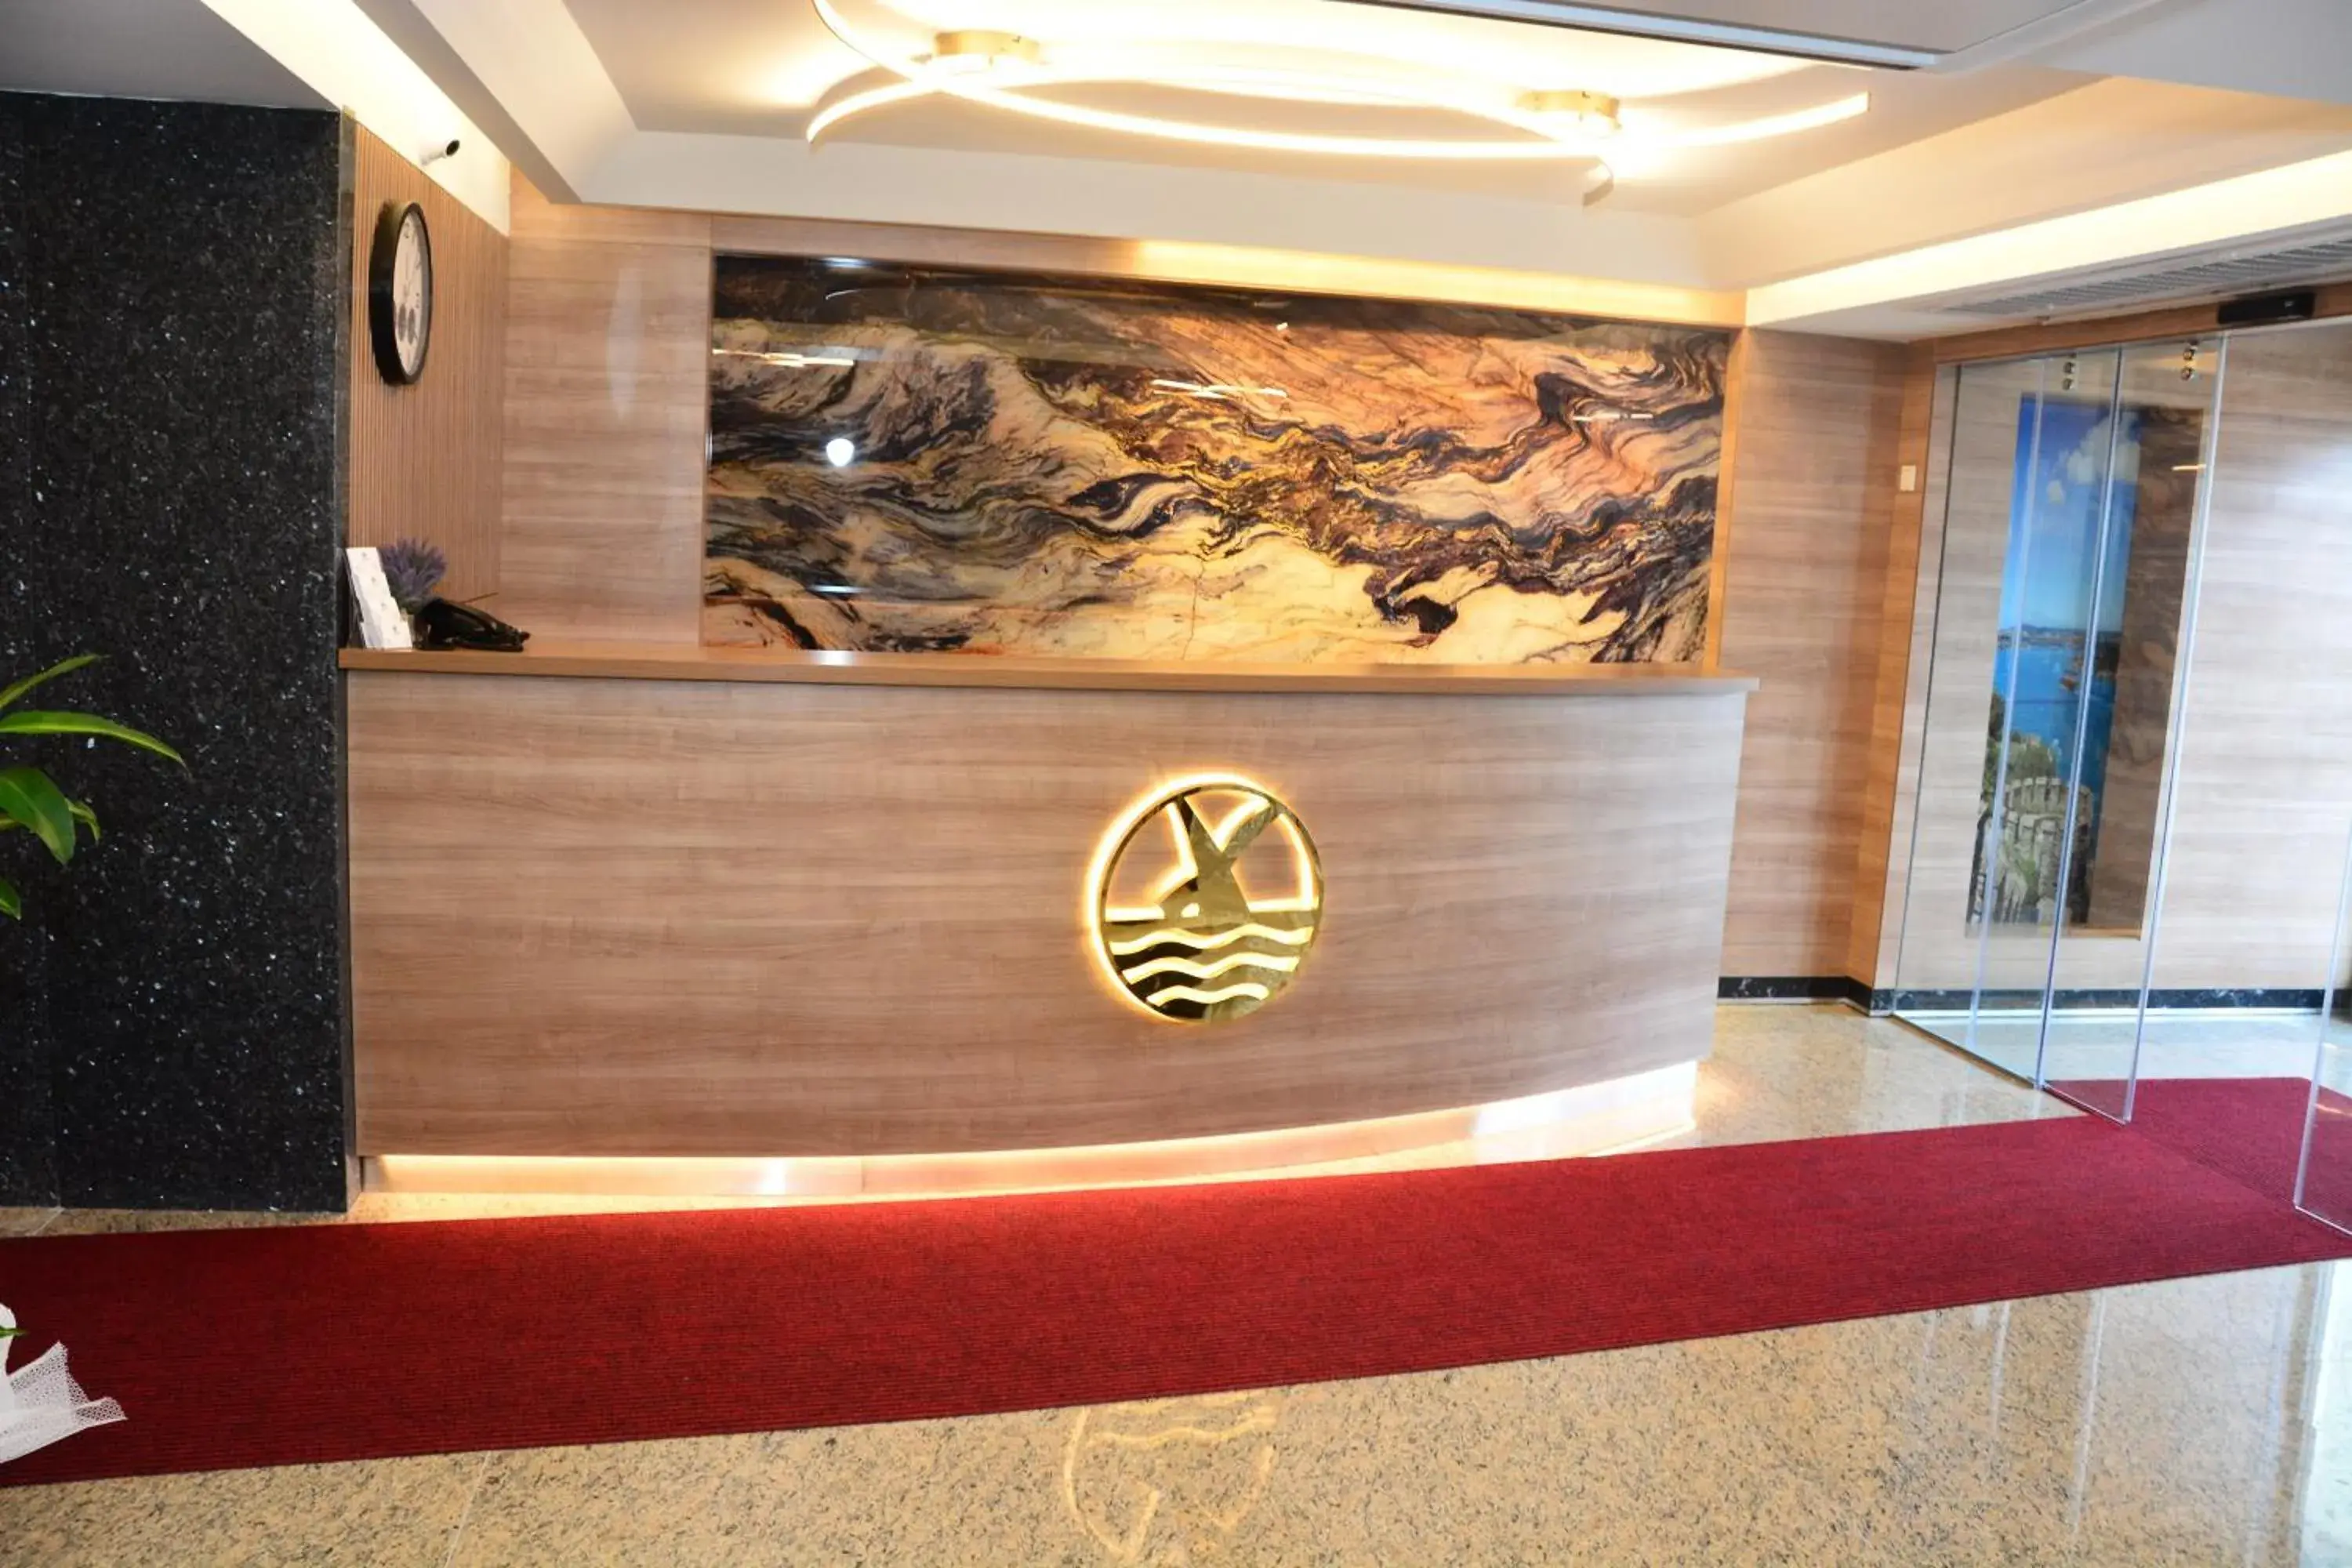 Lobby or reception, Lobby/Reception in RADAR HOTEL